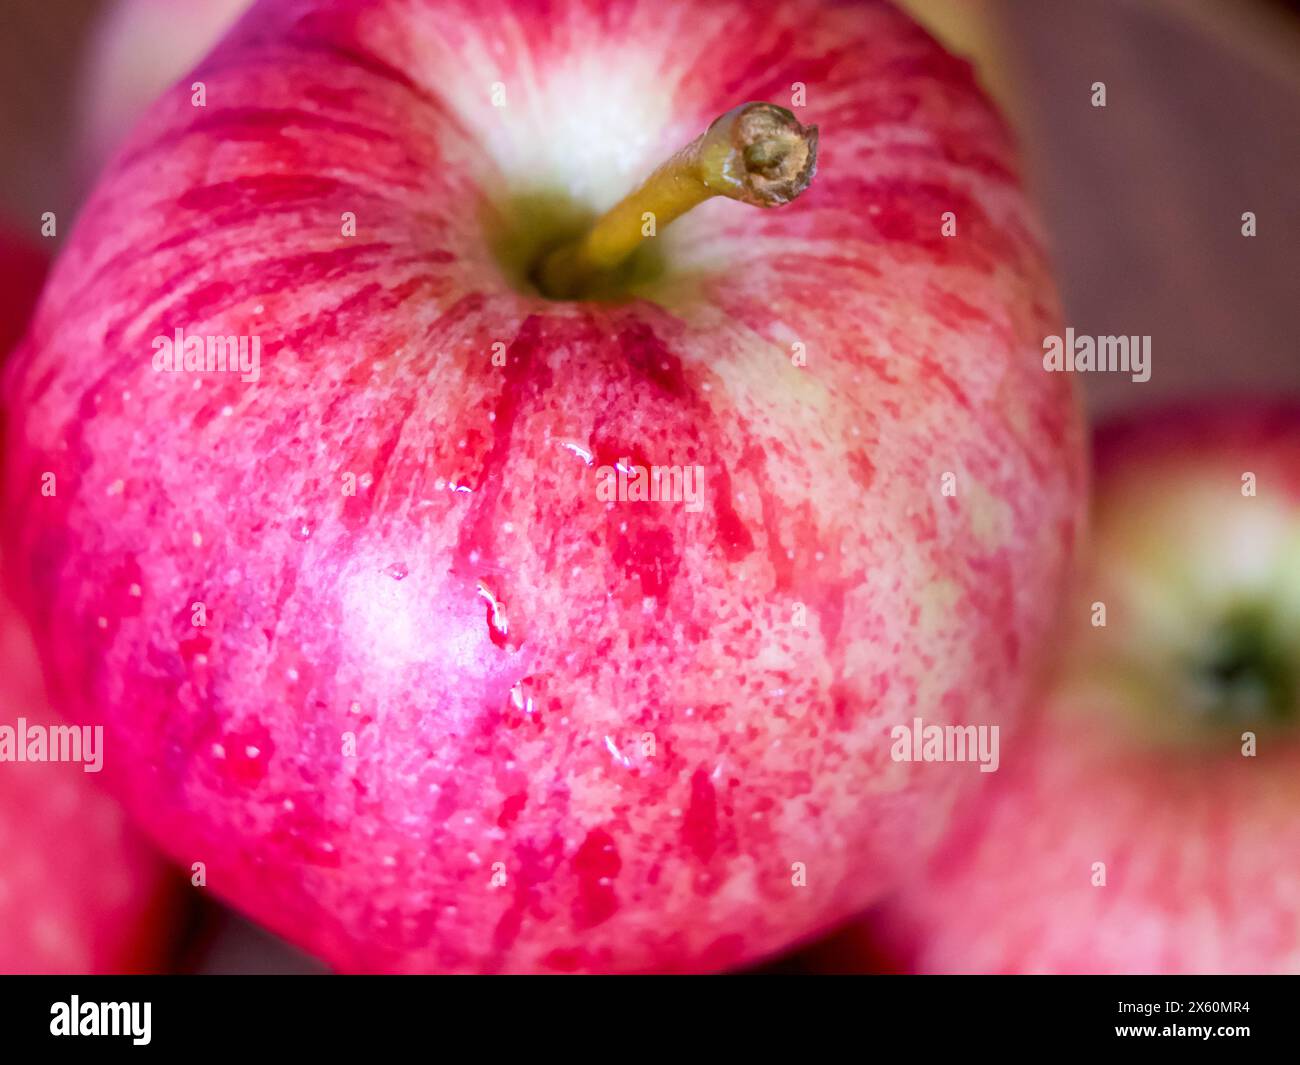 Nahaufnahme Mit Taufe Des Apple. Eine Nahaufnahme eines roten Apfels mit Tau, perfekt für Bio-Lebensmittel und Wellness-Aktionen. Stockfoto